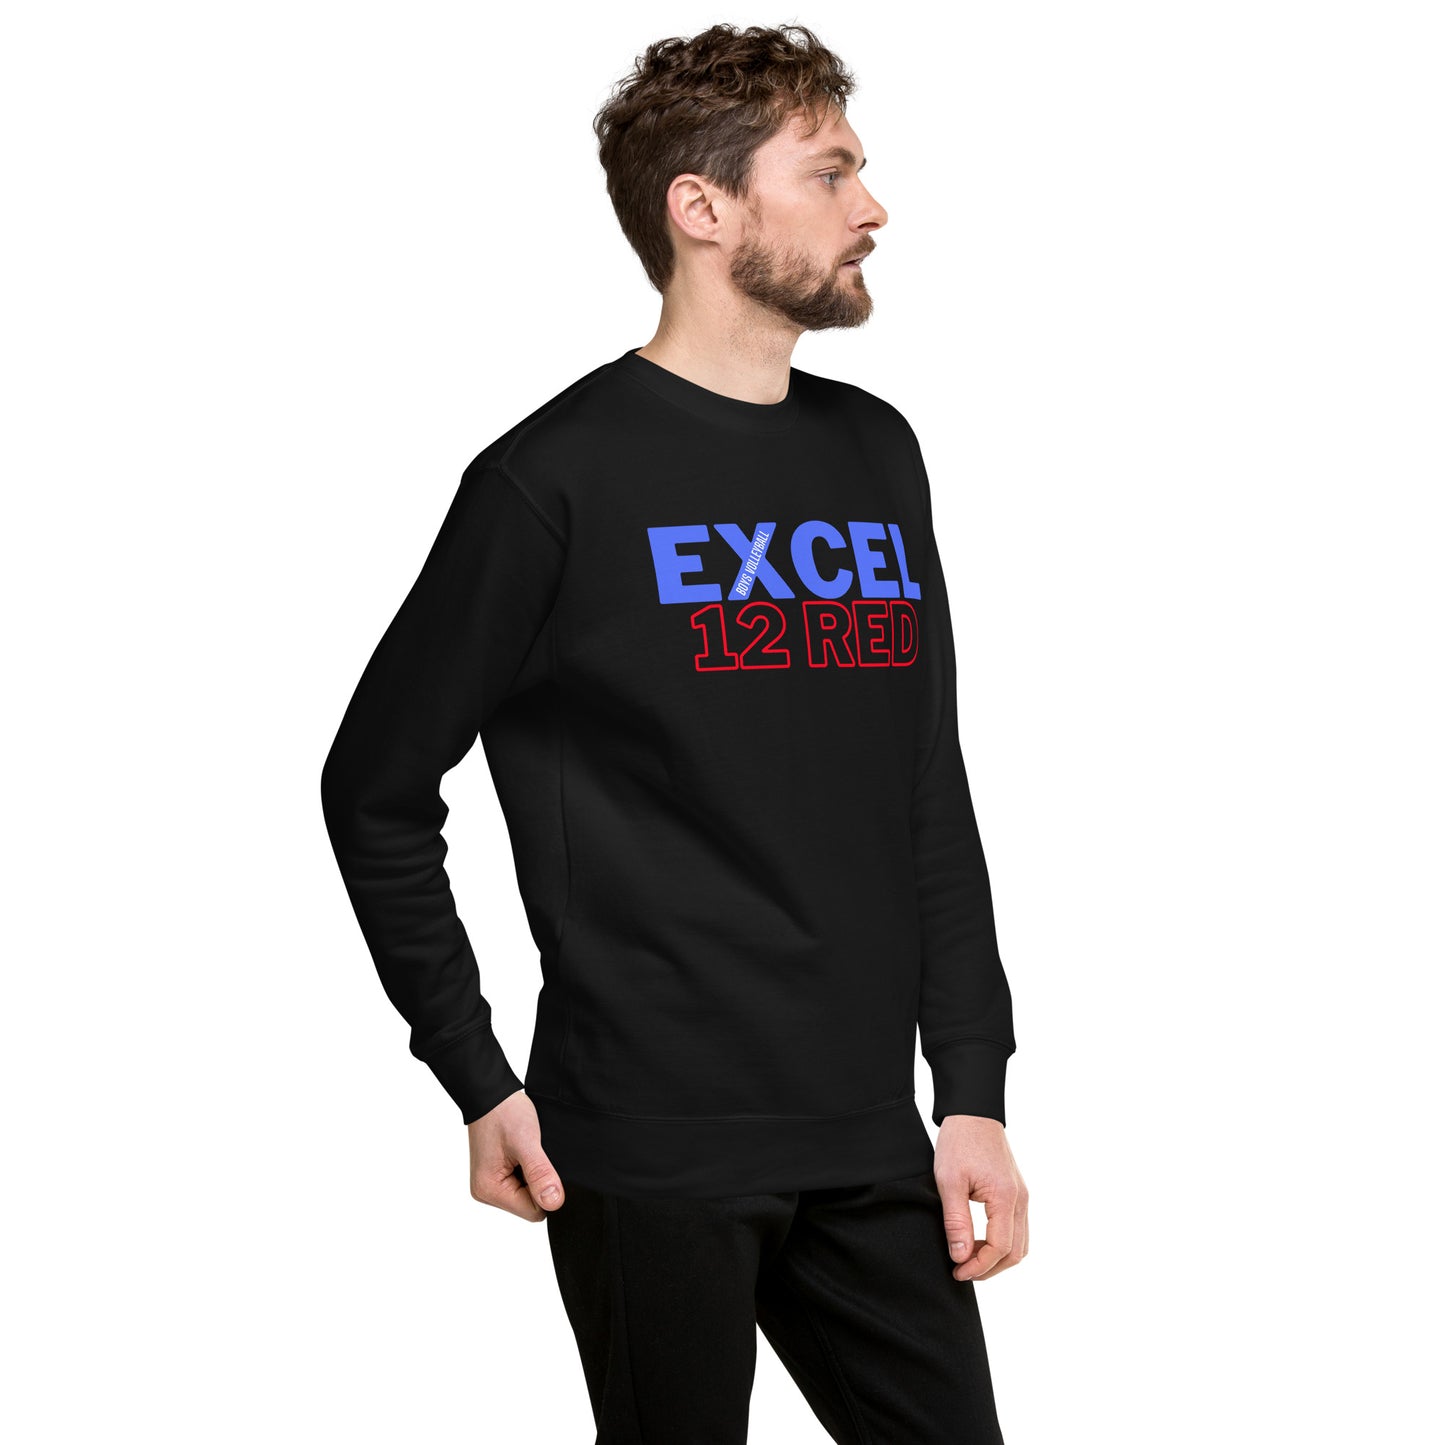 Excel - Boys Volleyball - 12 Red - Unisex Premium Sweatshirt